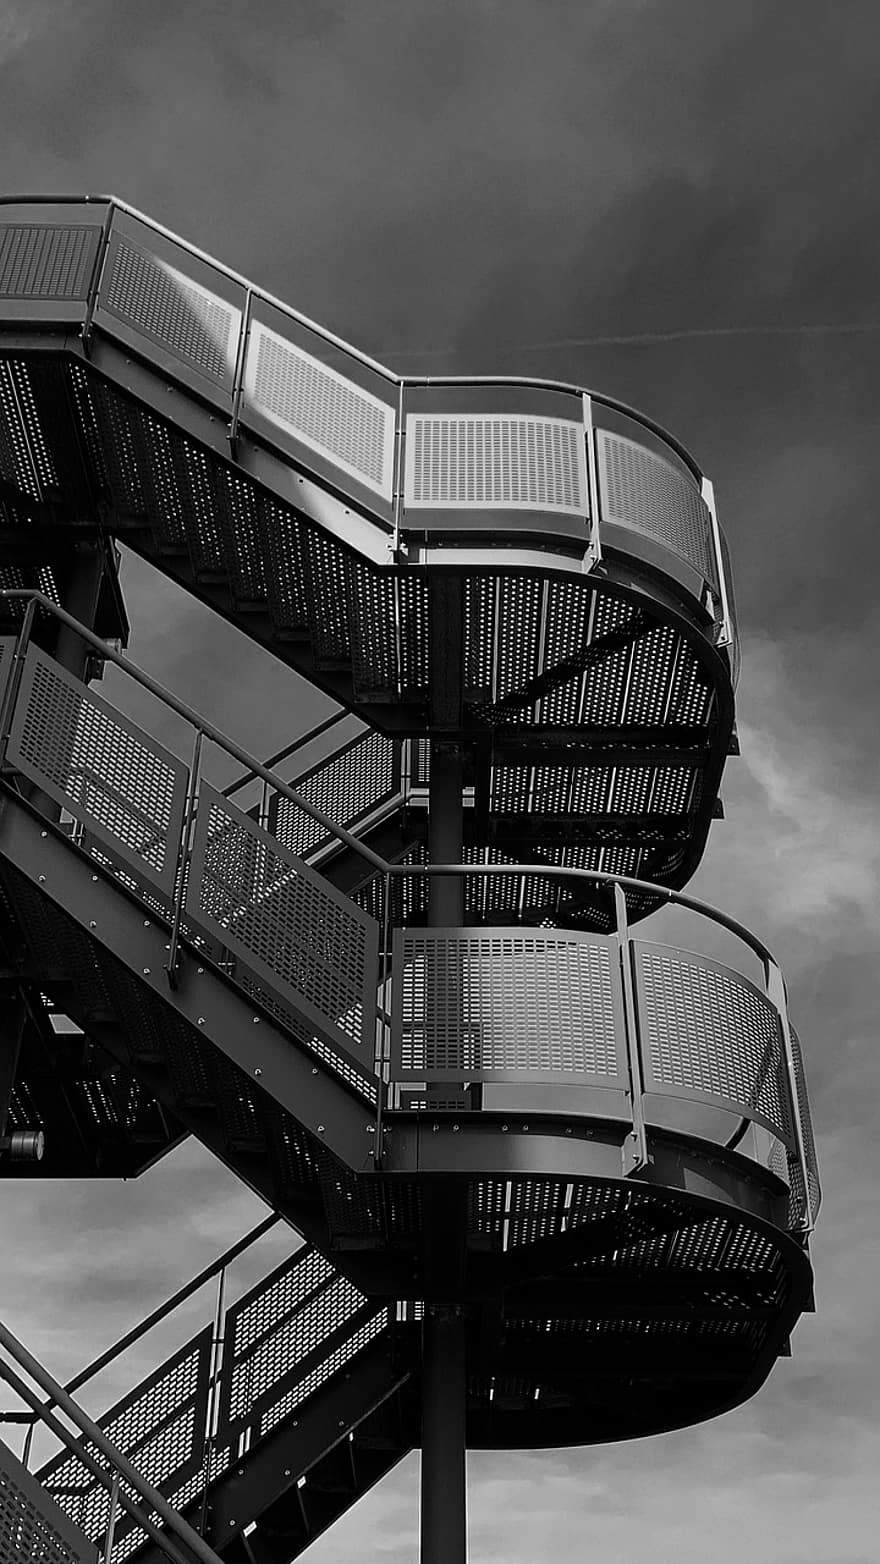 σκάλες, Κτίριο, αρχιτεκτονική, κλιμακοστάσιο, σκάλα, βήματα, ατσάλι, μέταλλο, μαύρο και άσπρο, δομημένη δομή, μοντέρνο